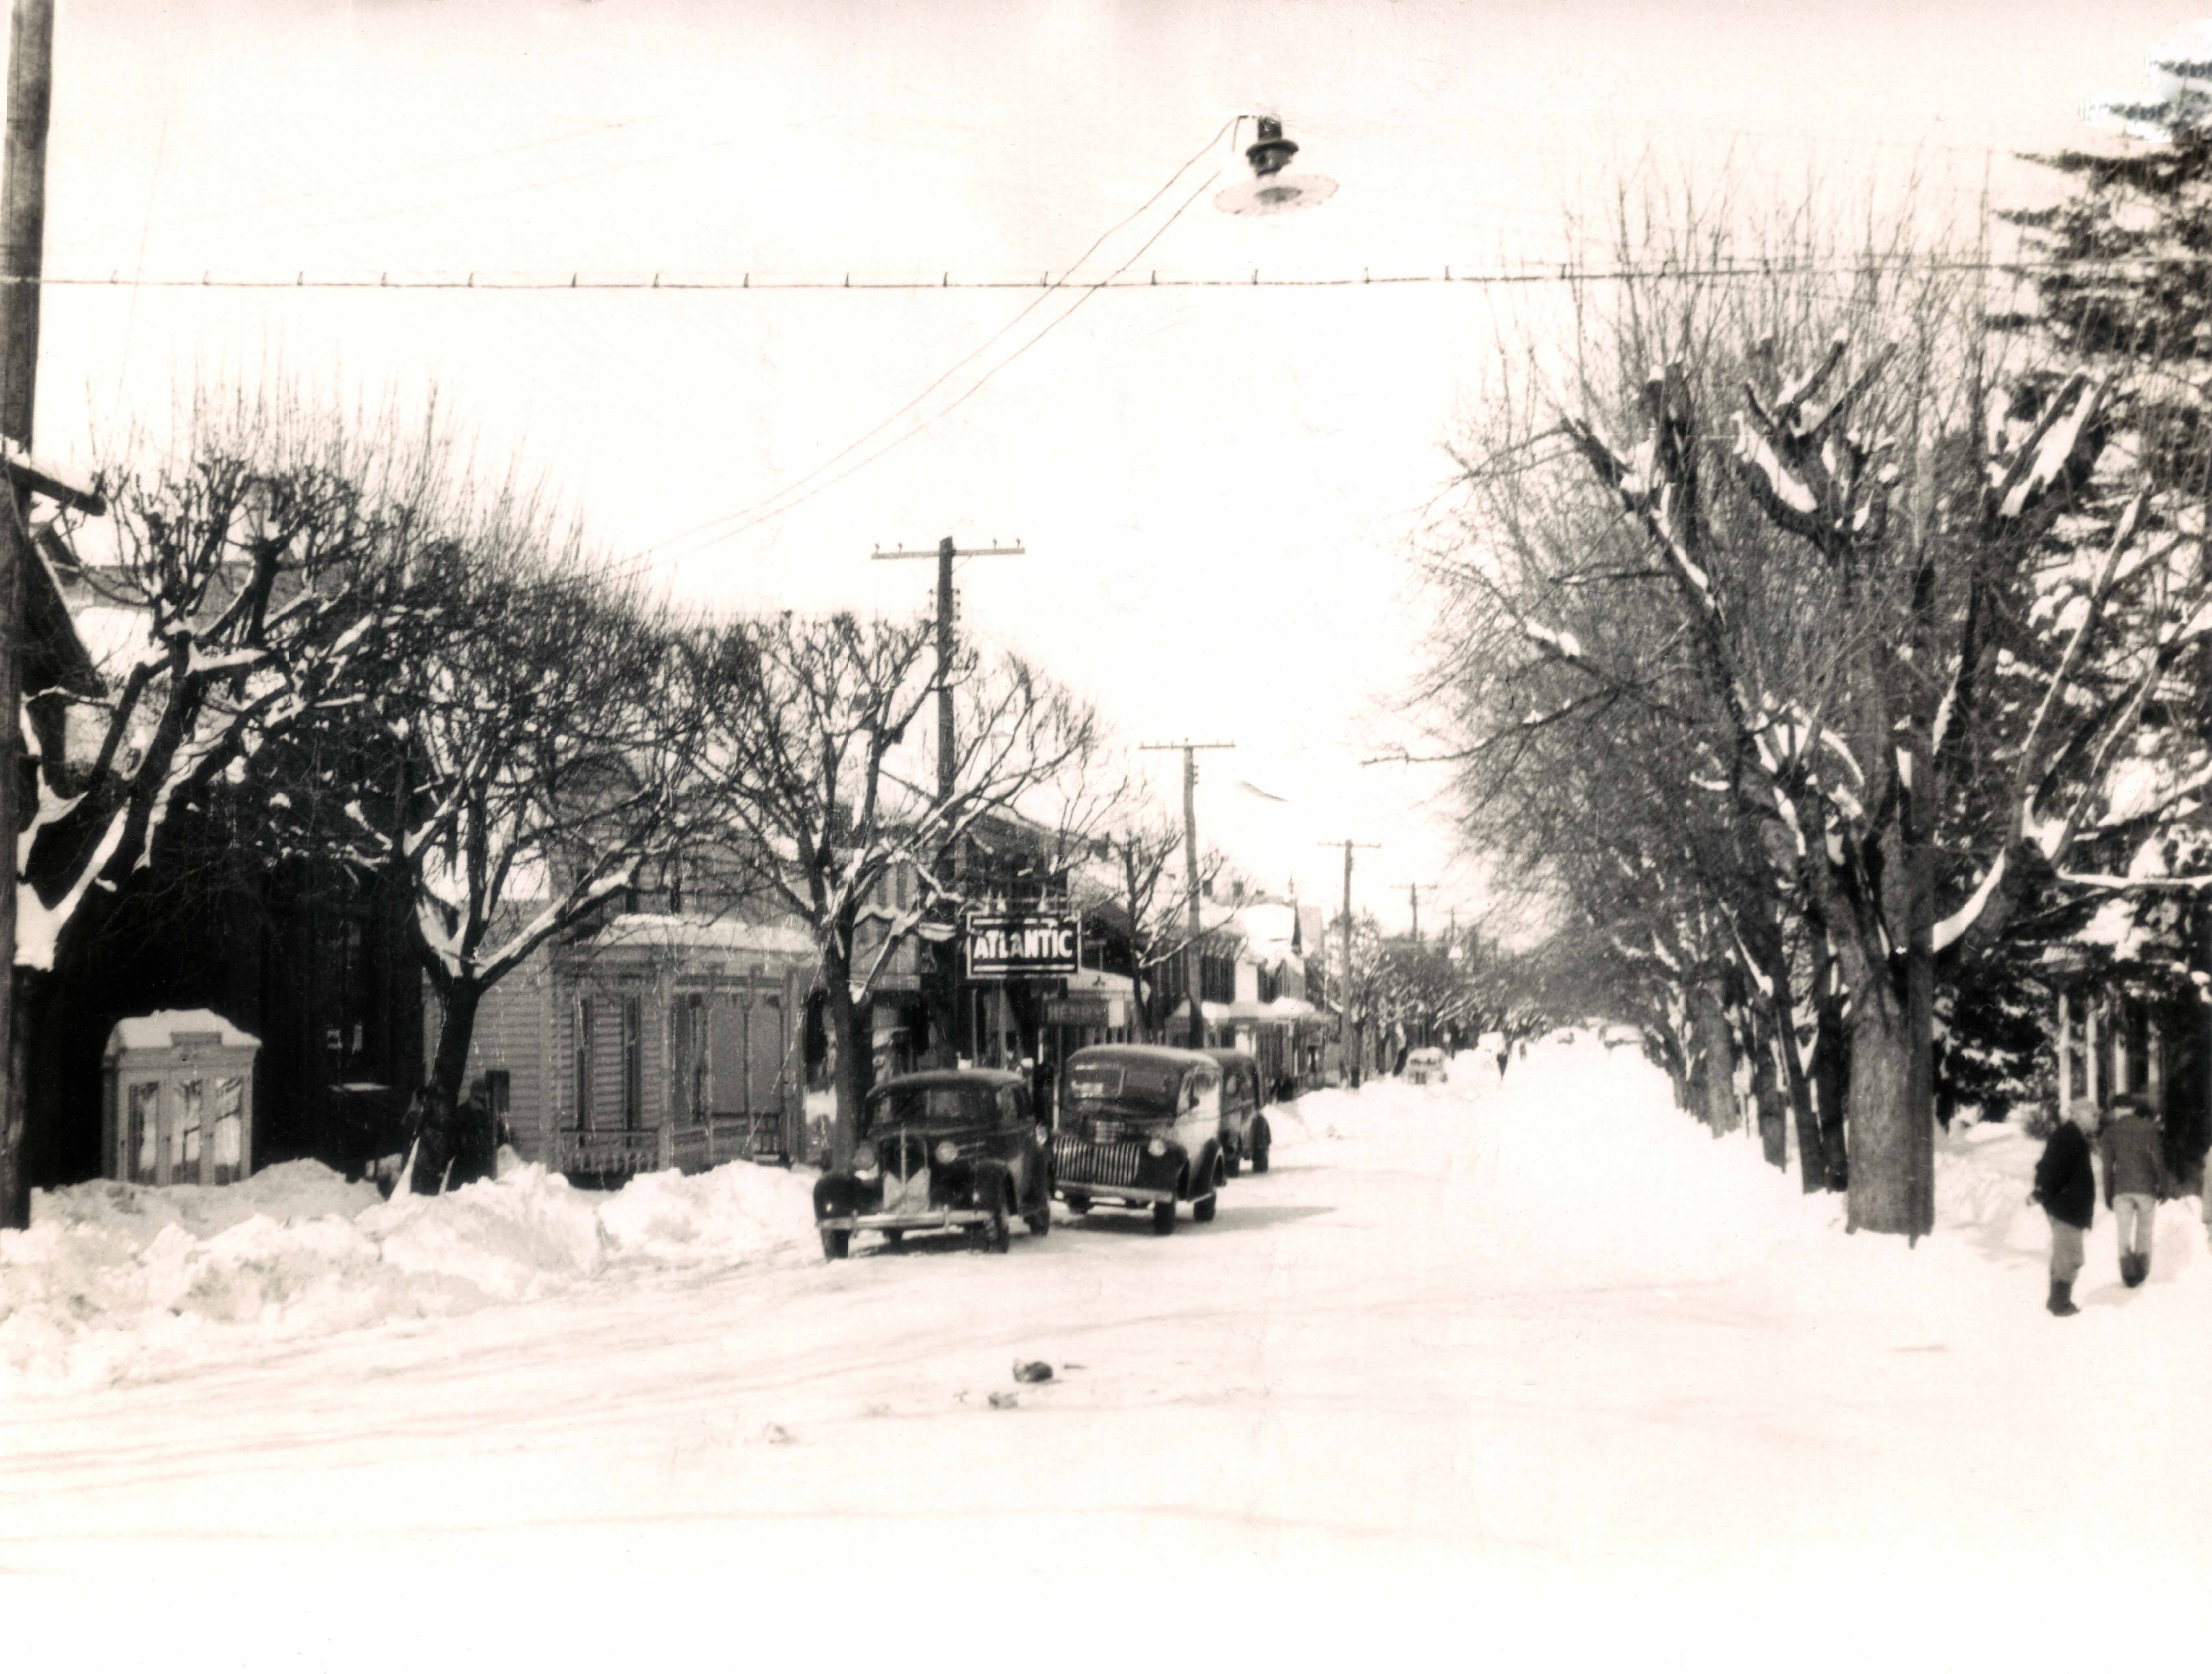 Baltimore Street 1941-1945